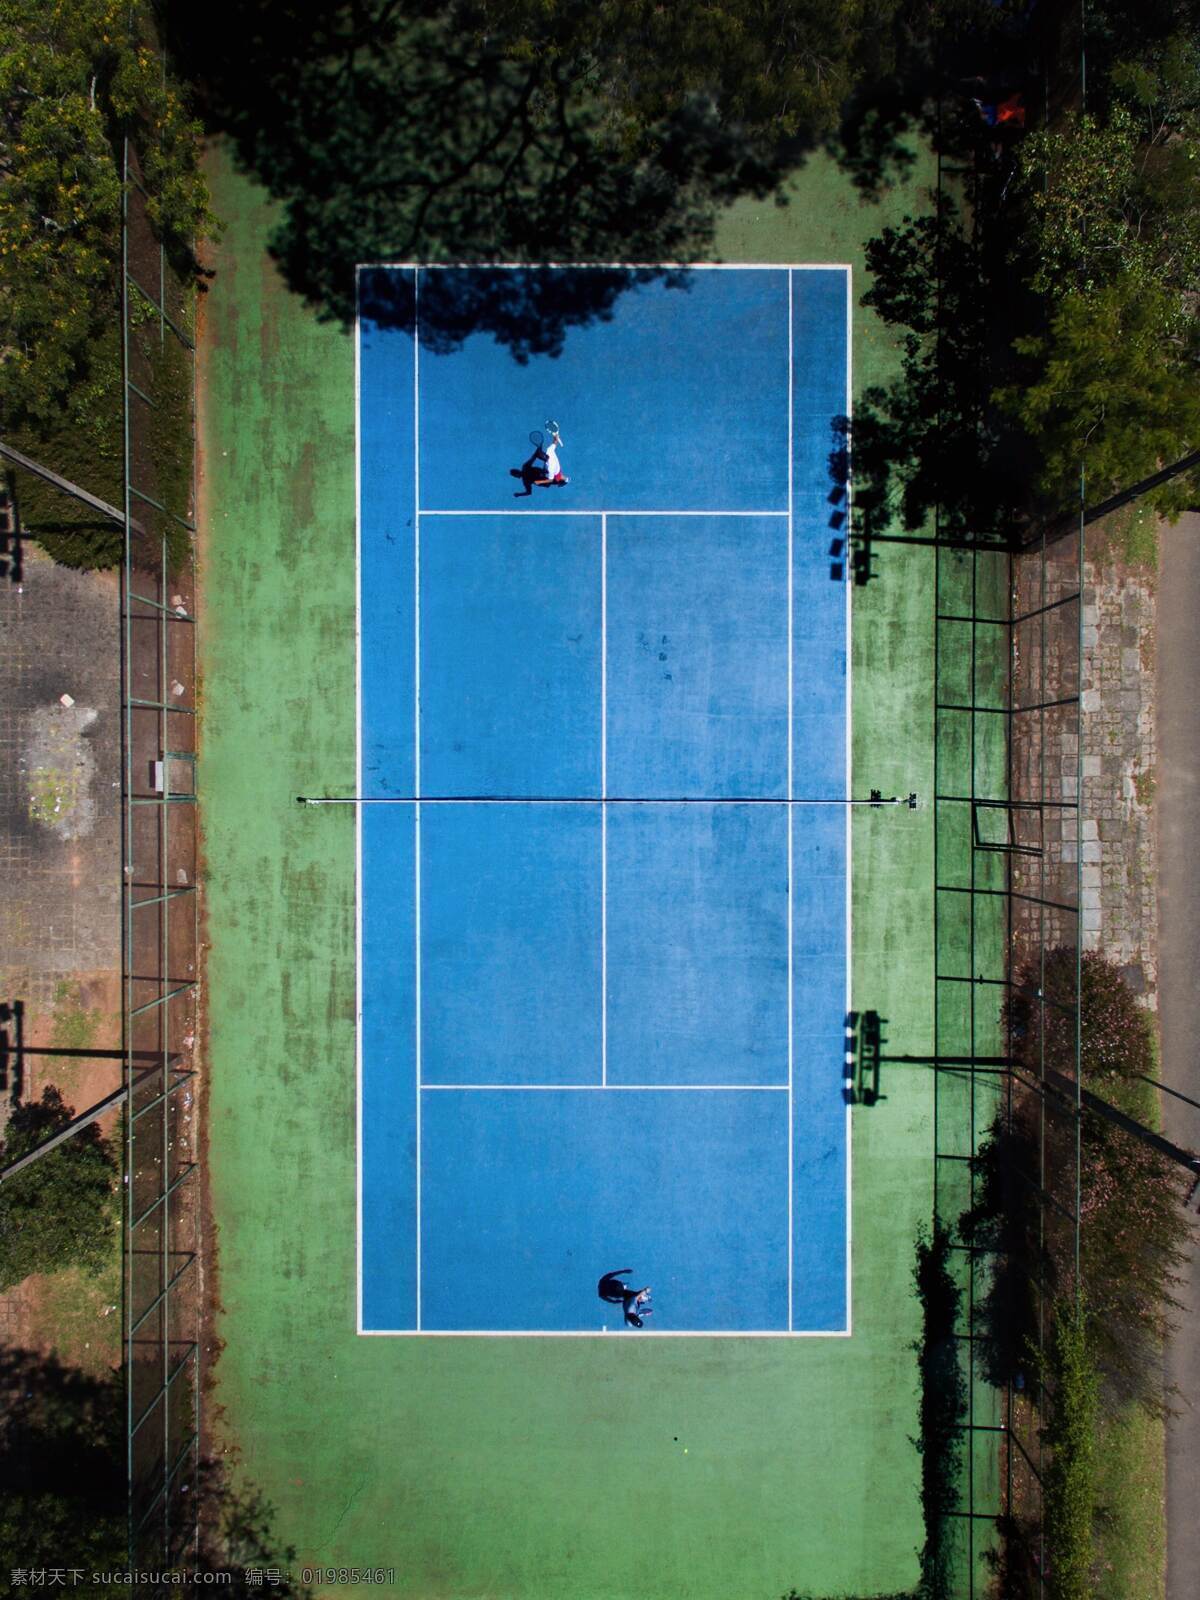 树林网球场 树林 森林 网球 网球场 打网球 蓝色网球场 自然景观 建筑景观